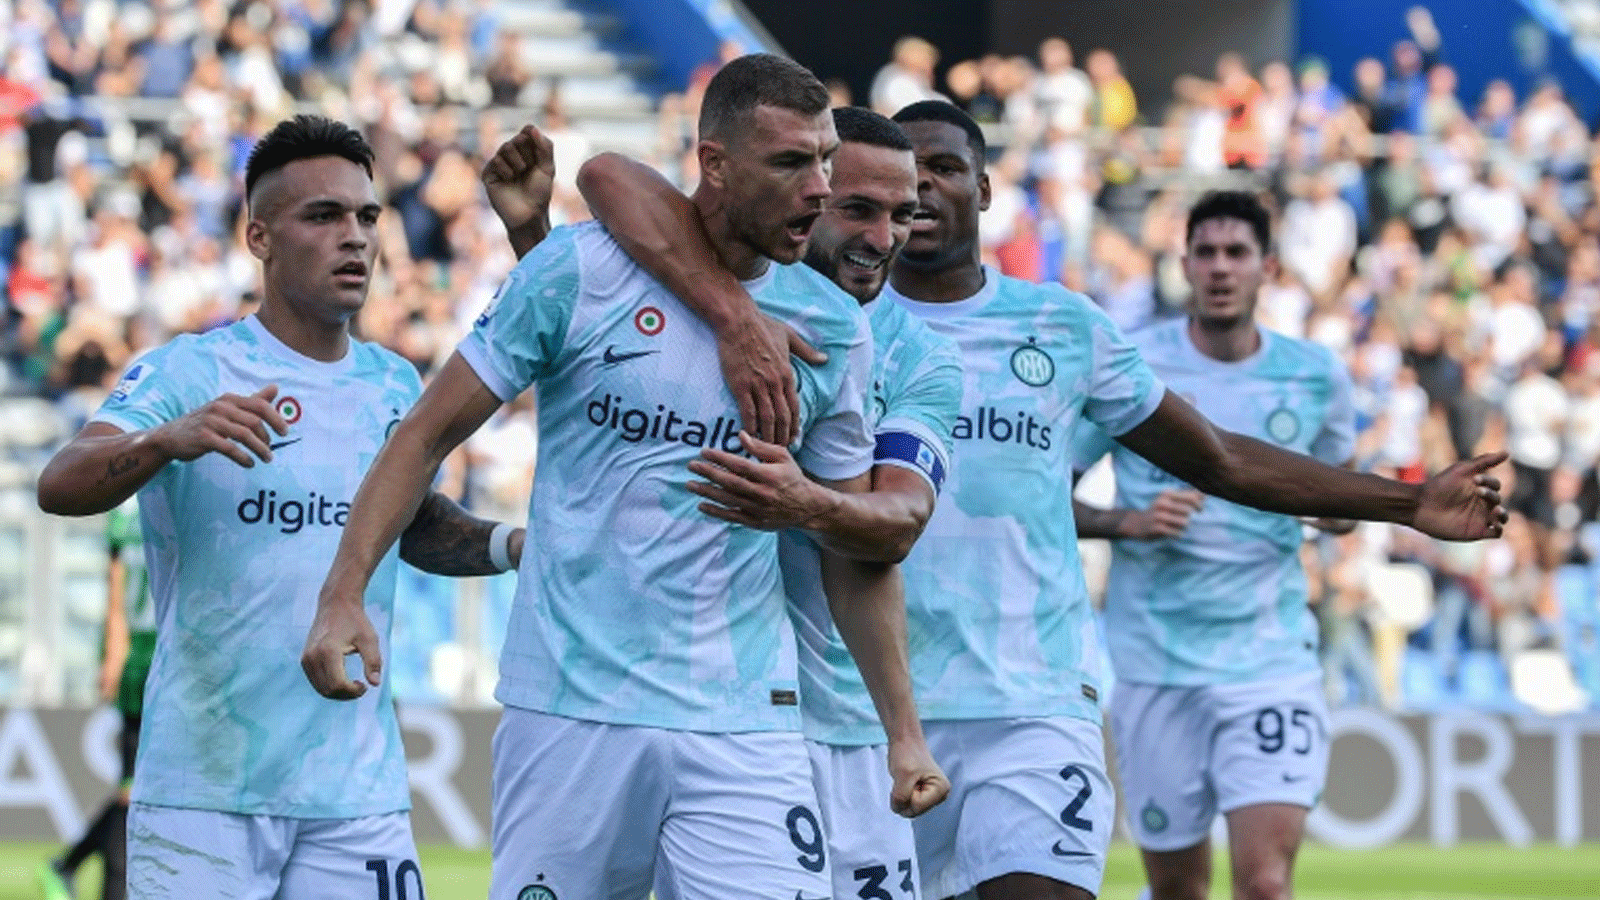 المهاجم البوسني إدين دجيكو يحتفل بهدفه ضد ساسوولو مع إنتر في الدوري الايطالي لكرة القدم في 8 تشرين الاول/اكتوبر 2022